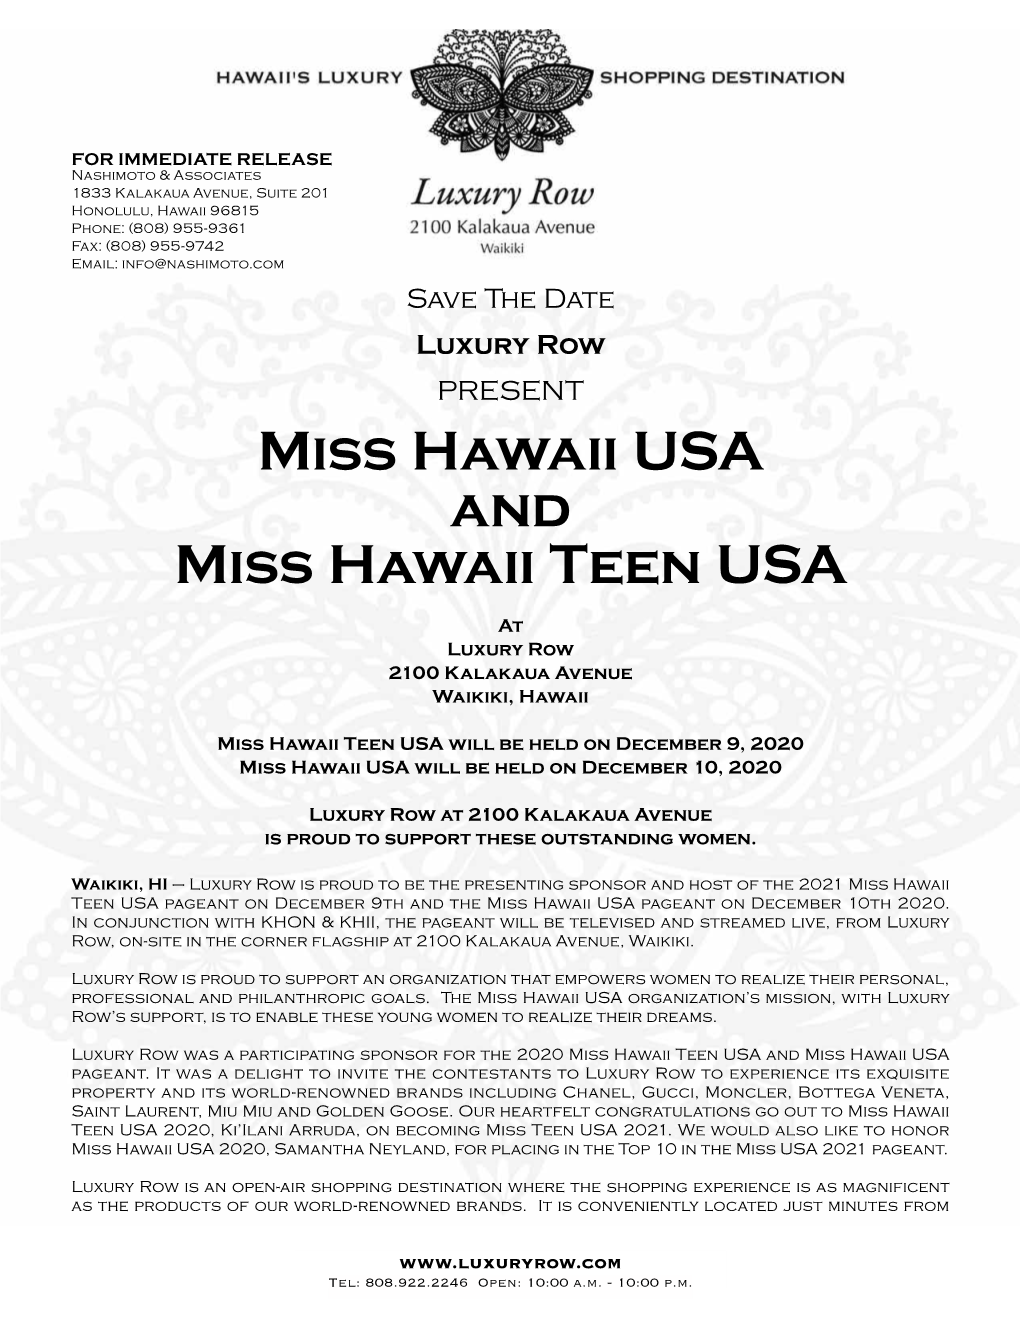 Miss Hawaii USA and Miss Hawaii Teen USA